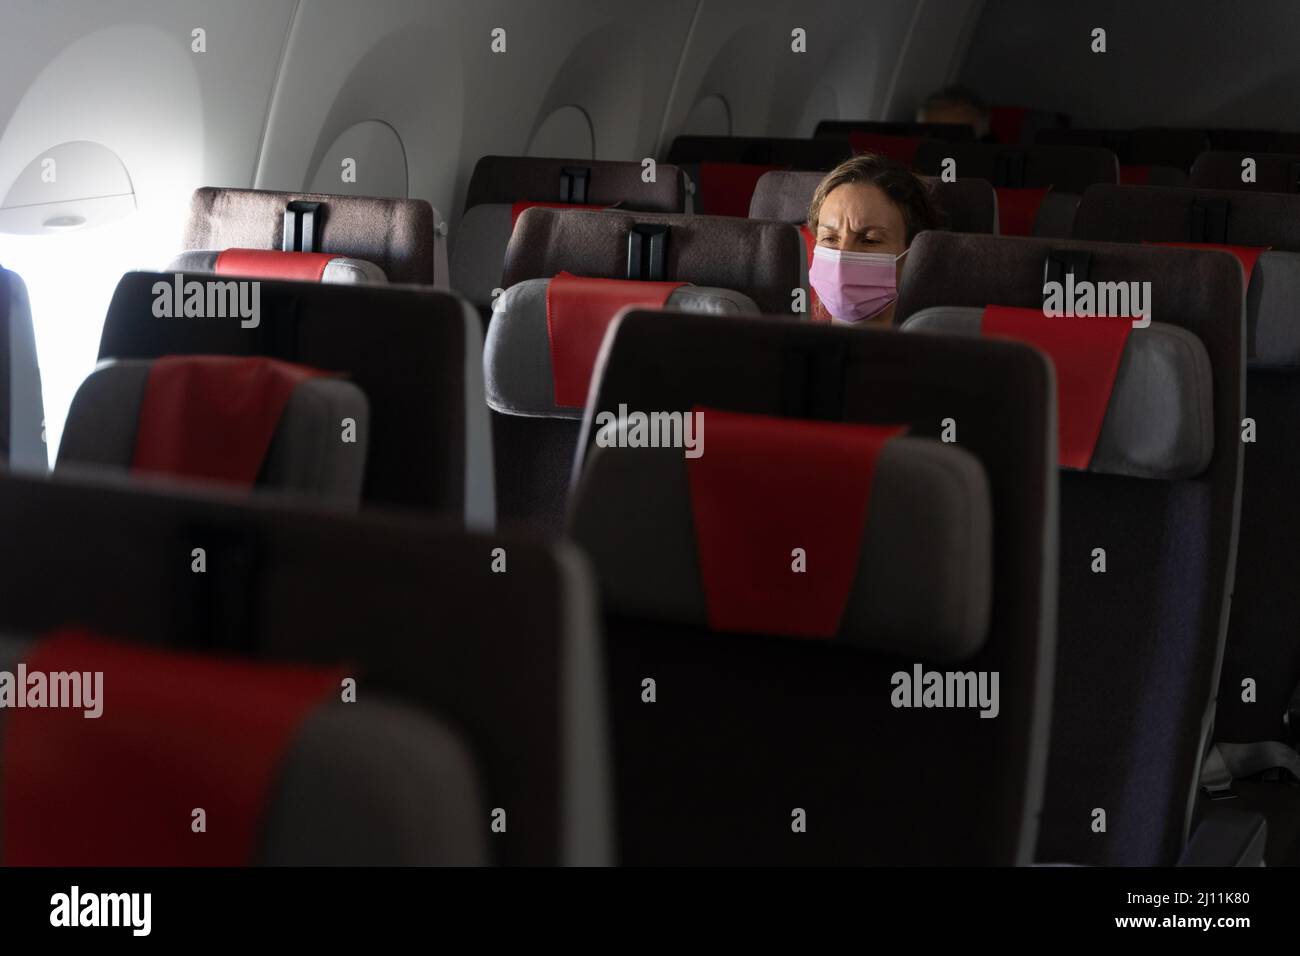 Femme avec masque rose assise sur le siège de rangée d'avion. Une femme seule voyageant en avion pendant la saison pandémique Banque D'Images